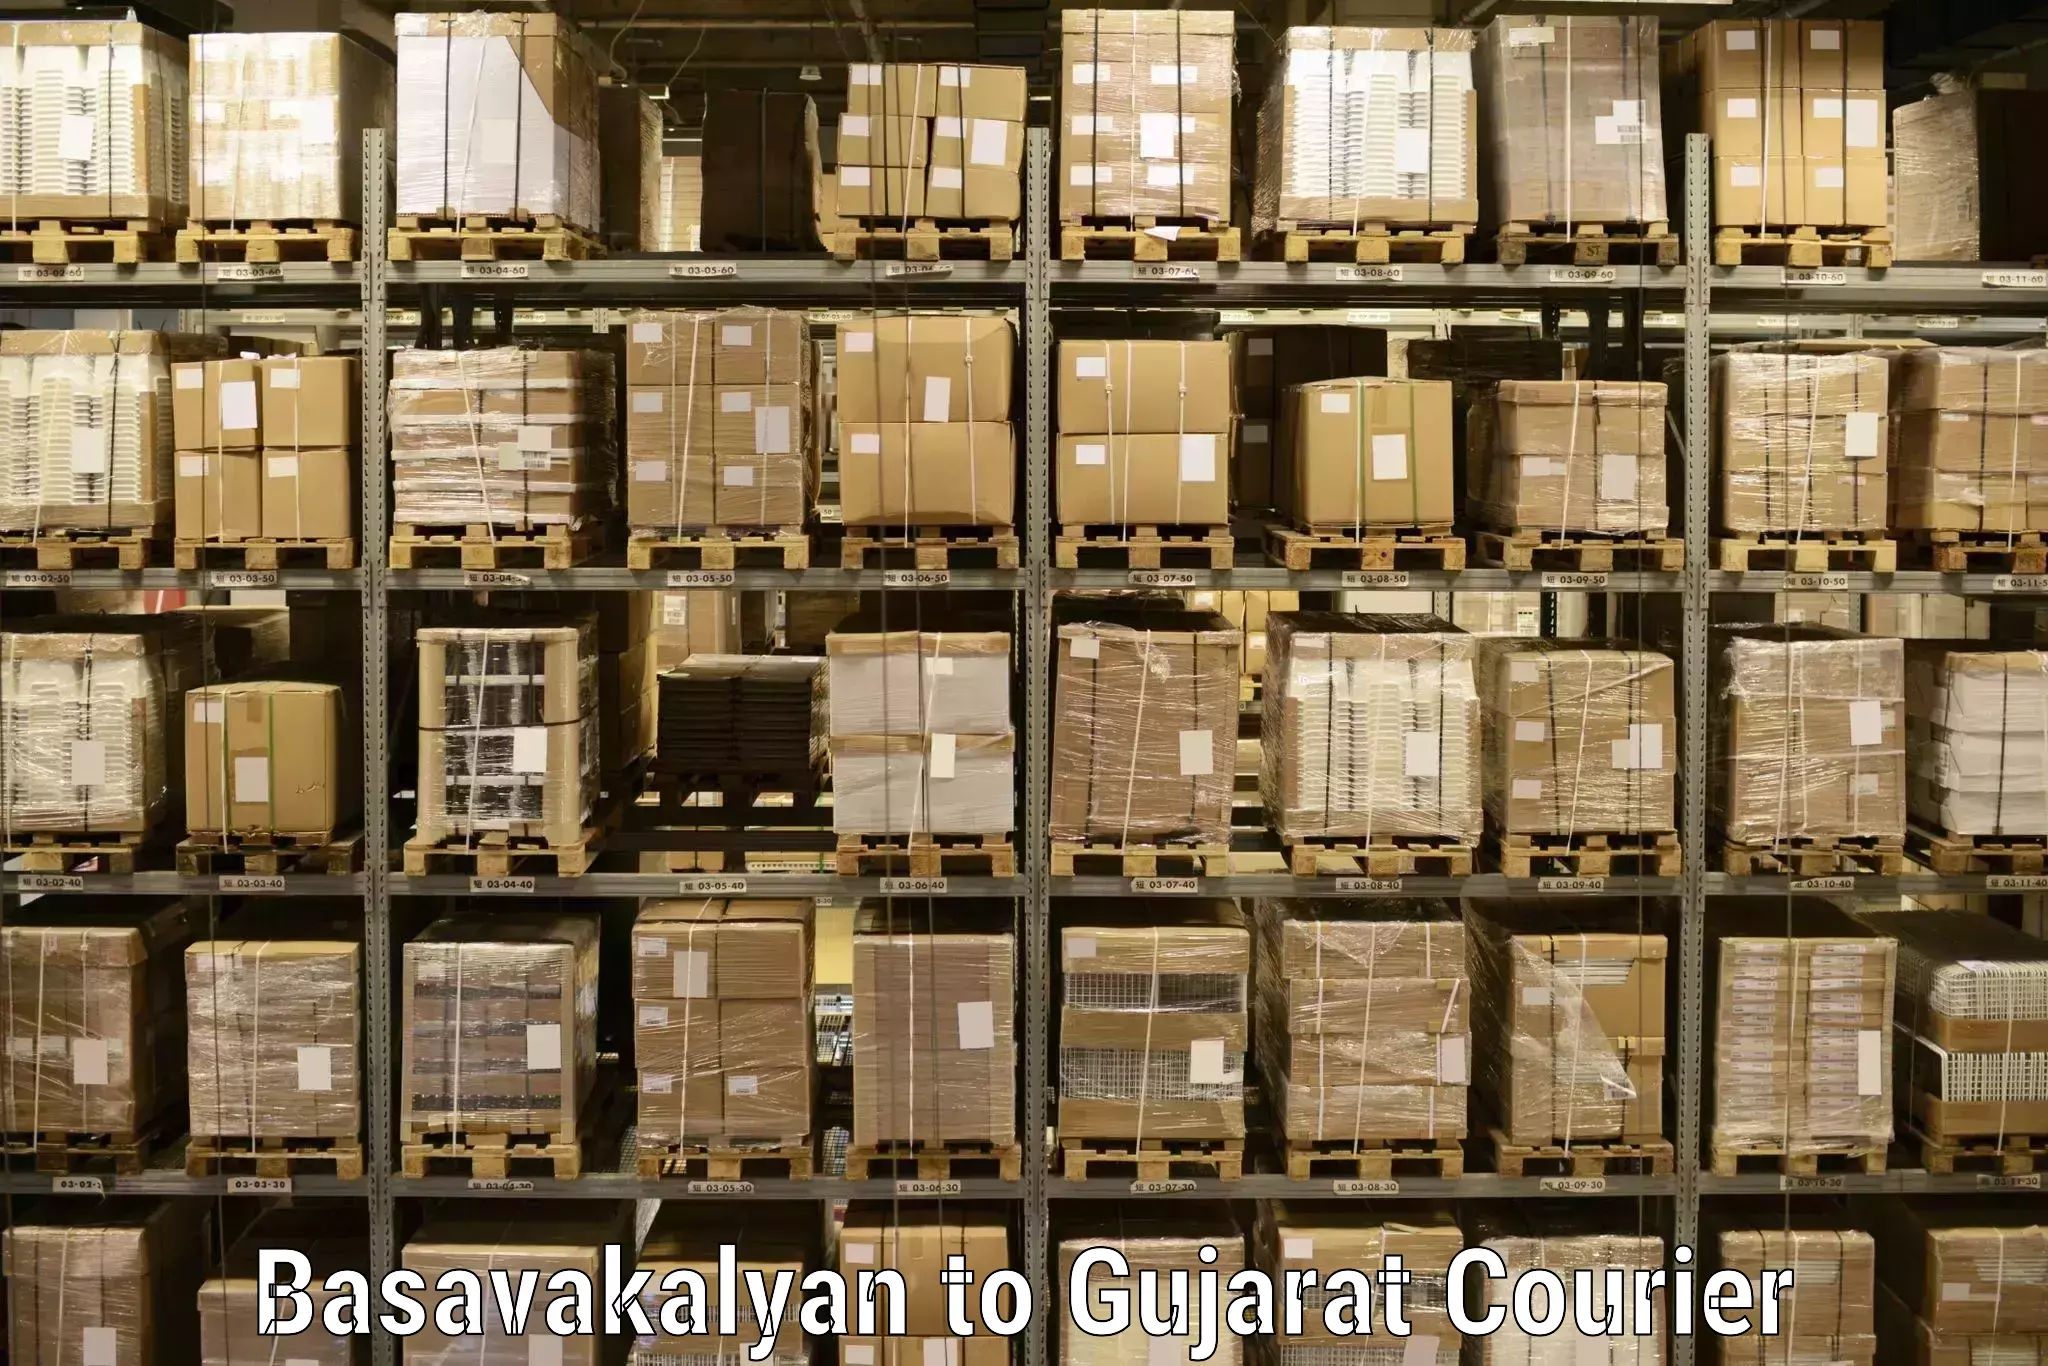 Professional courier handling Basavakalyan to Patan Gujarat